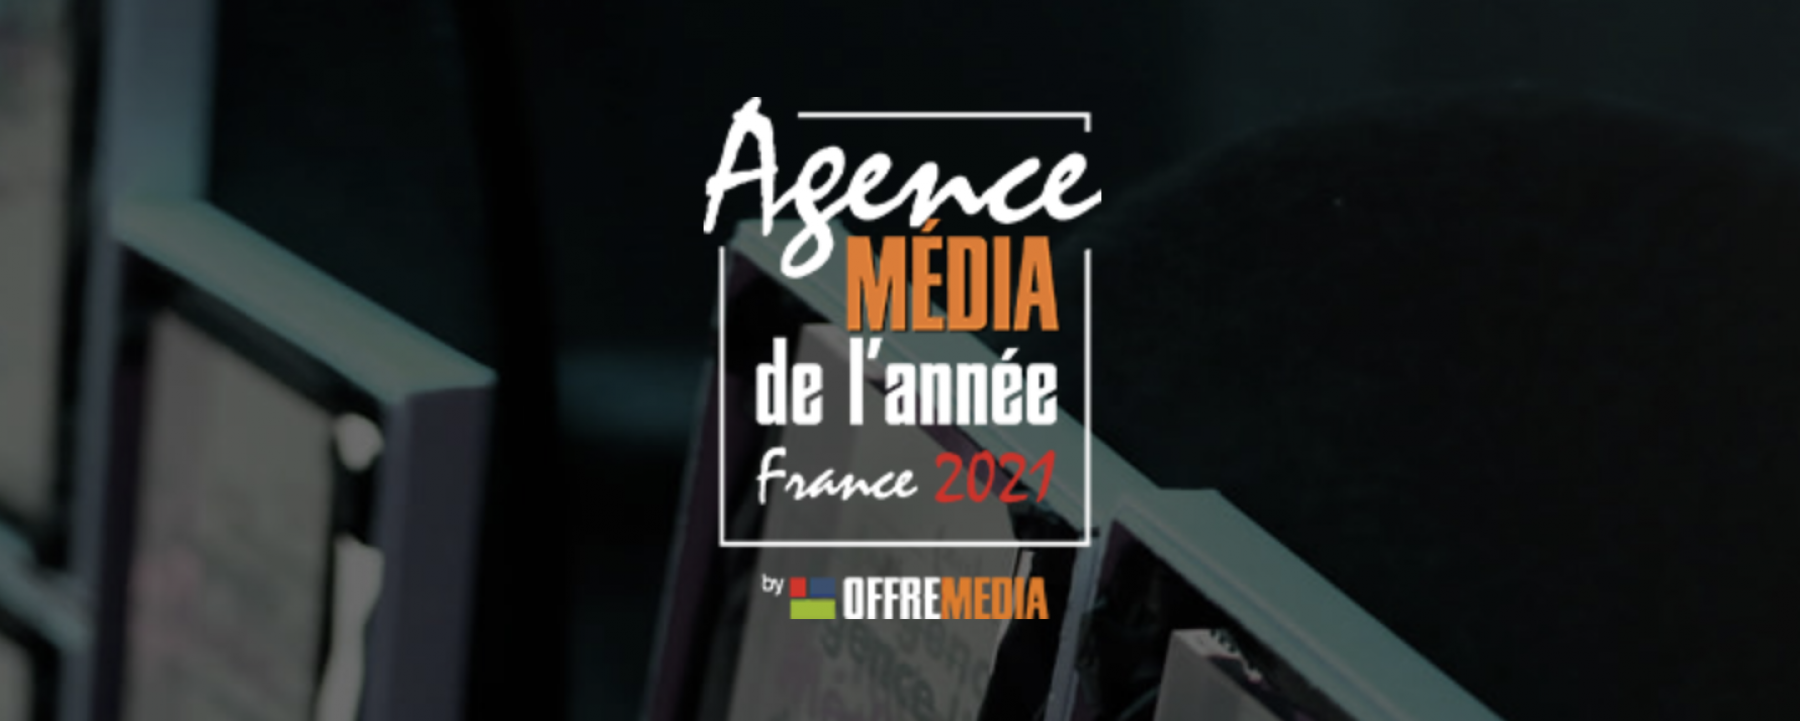 Prix Agence Média de l’année France, organisé par OFFREMEDIA le 28 janvier 2021